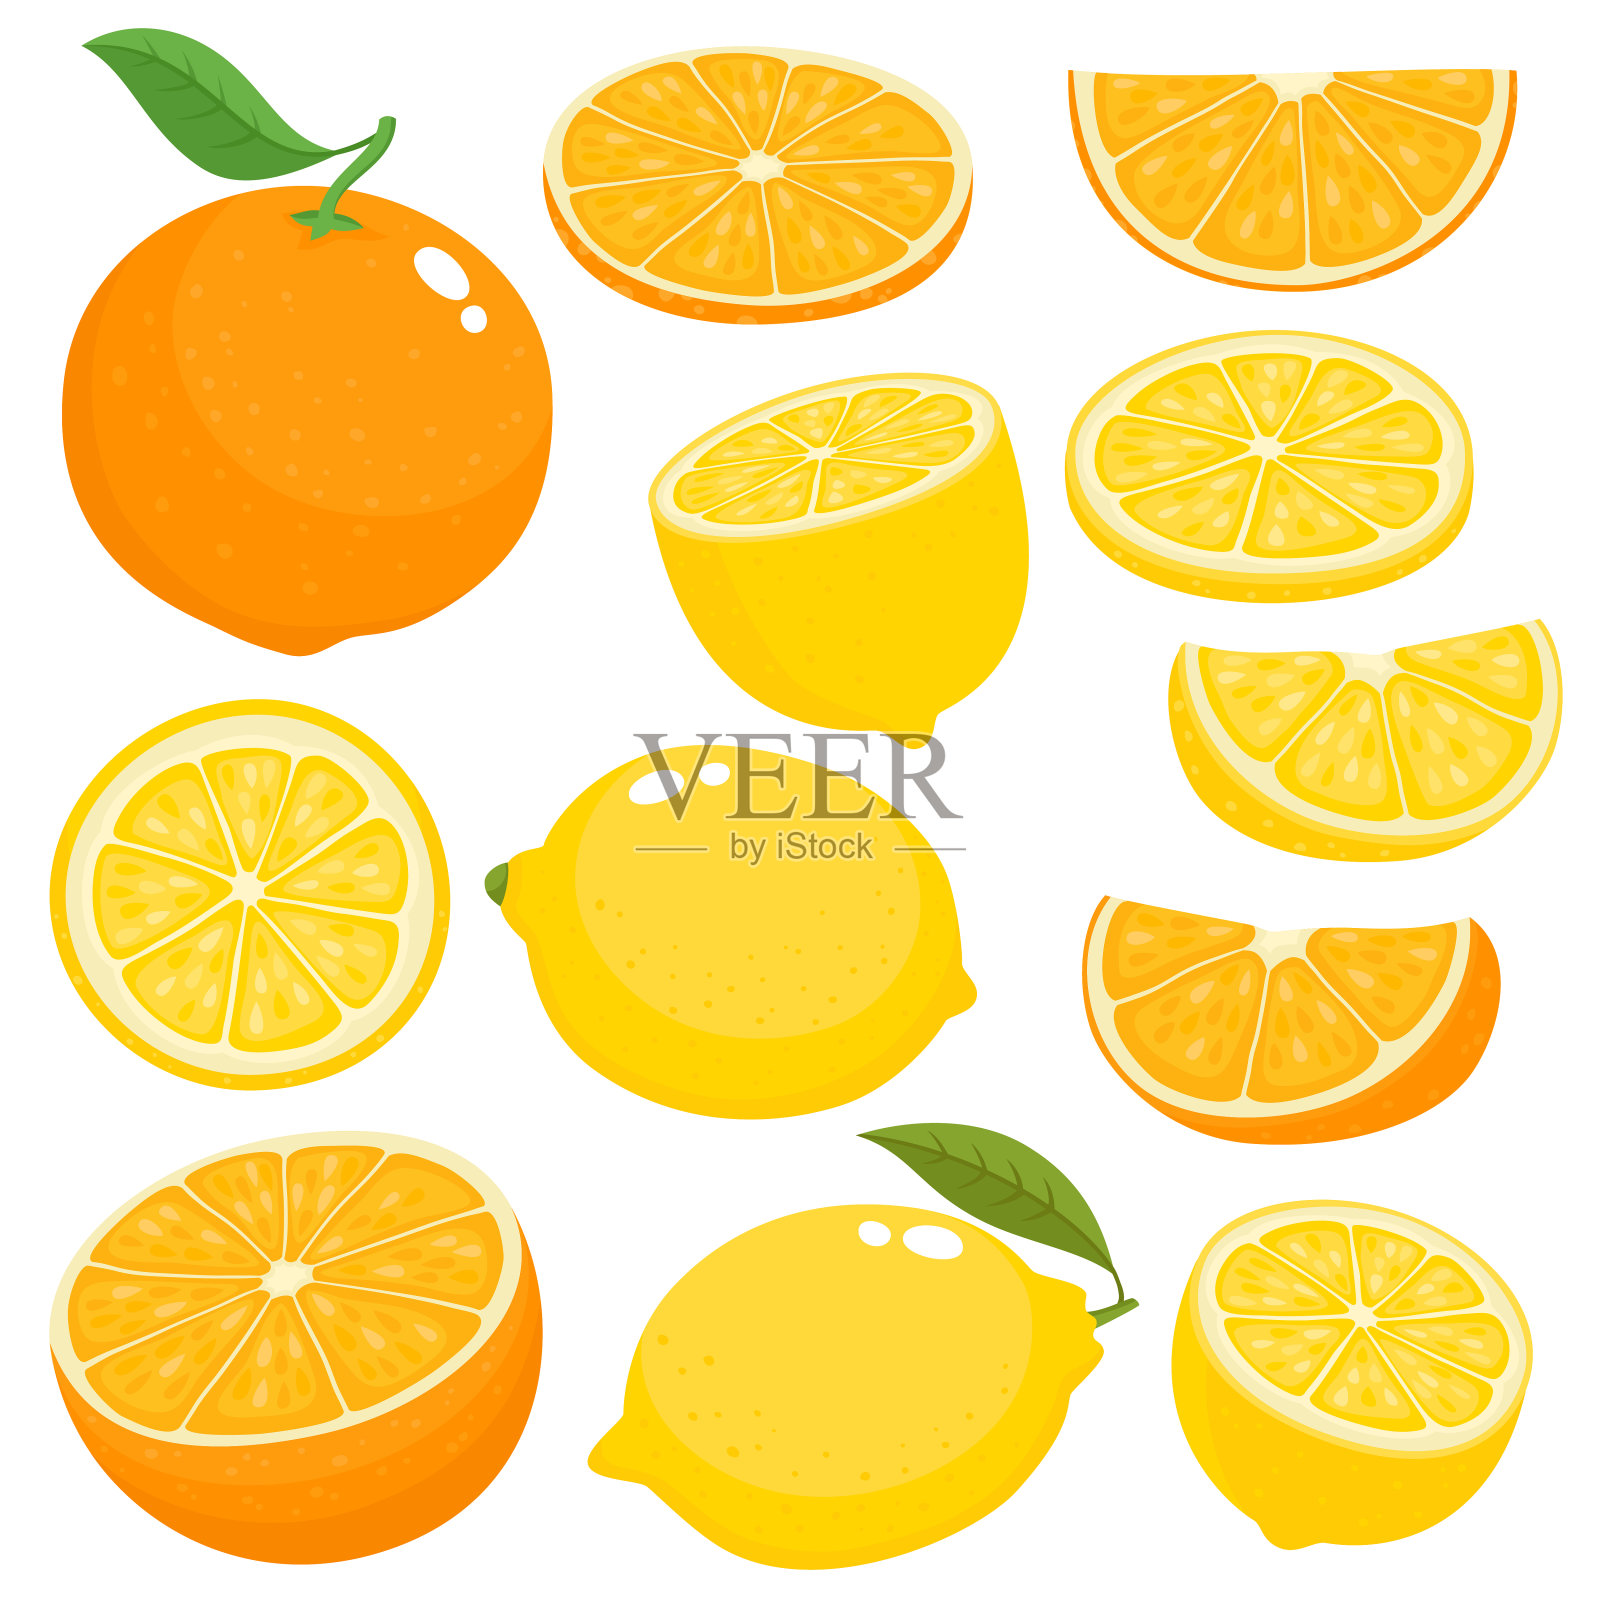 明亮的向量设置多汁的橙和柠檬在白色。设计元素图片